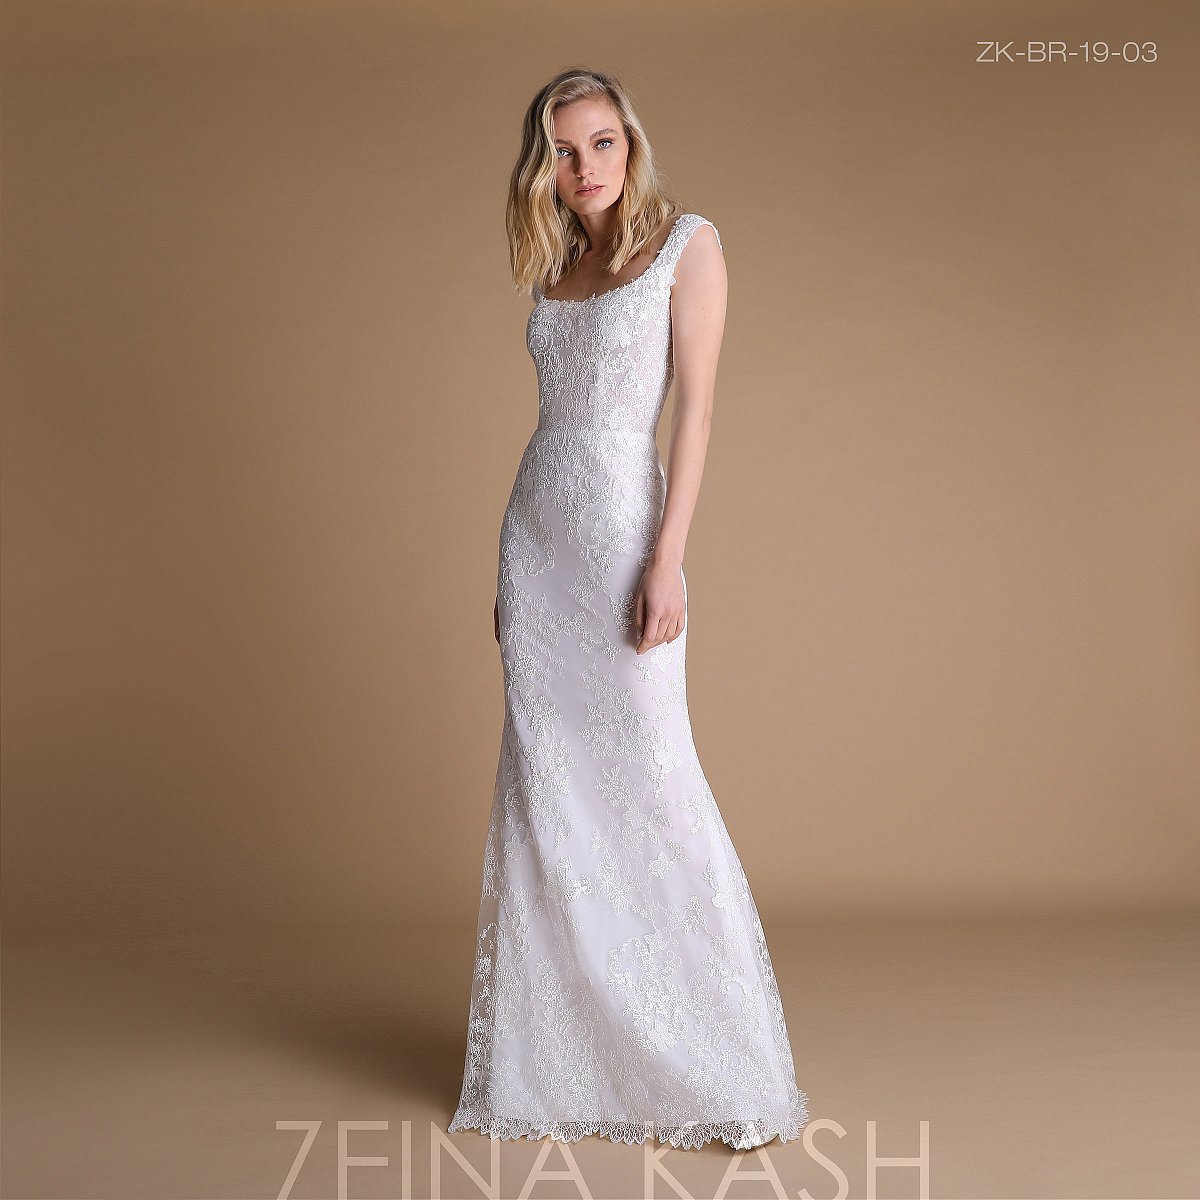 Zeina Kash 2019 koleksiyonu - Gelinlik - 1